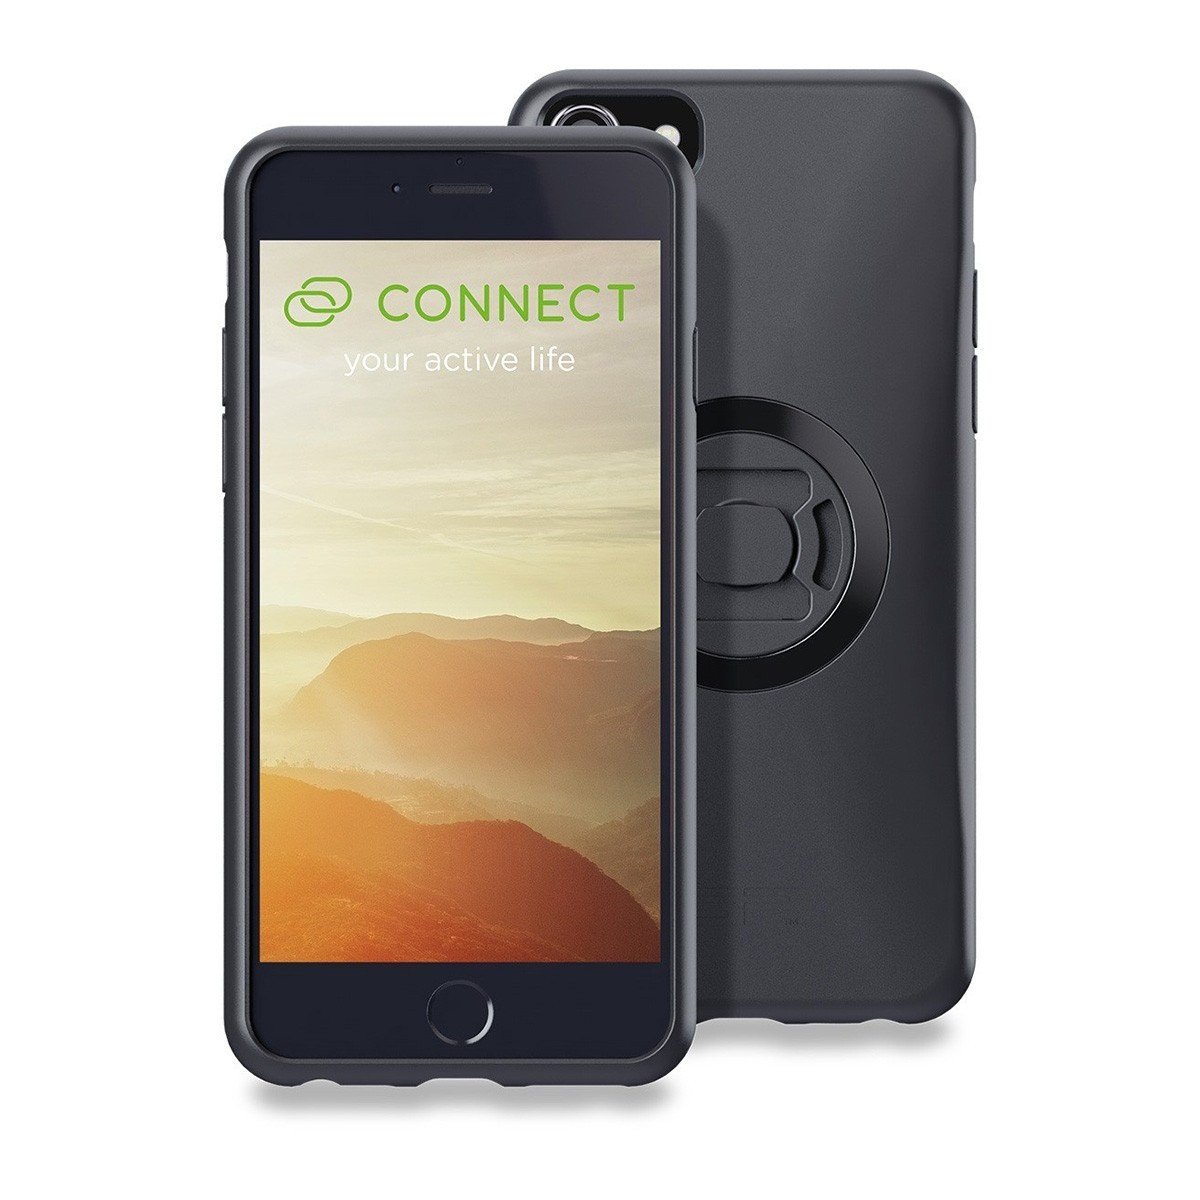 Tālrunis turētāji Phone case SP connect